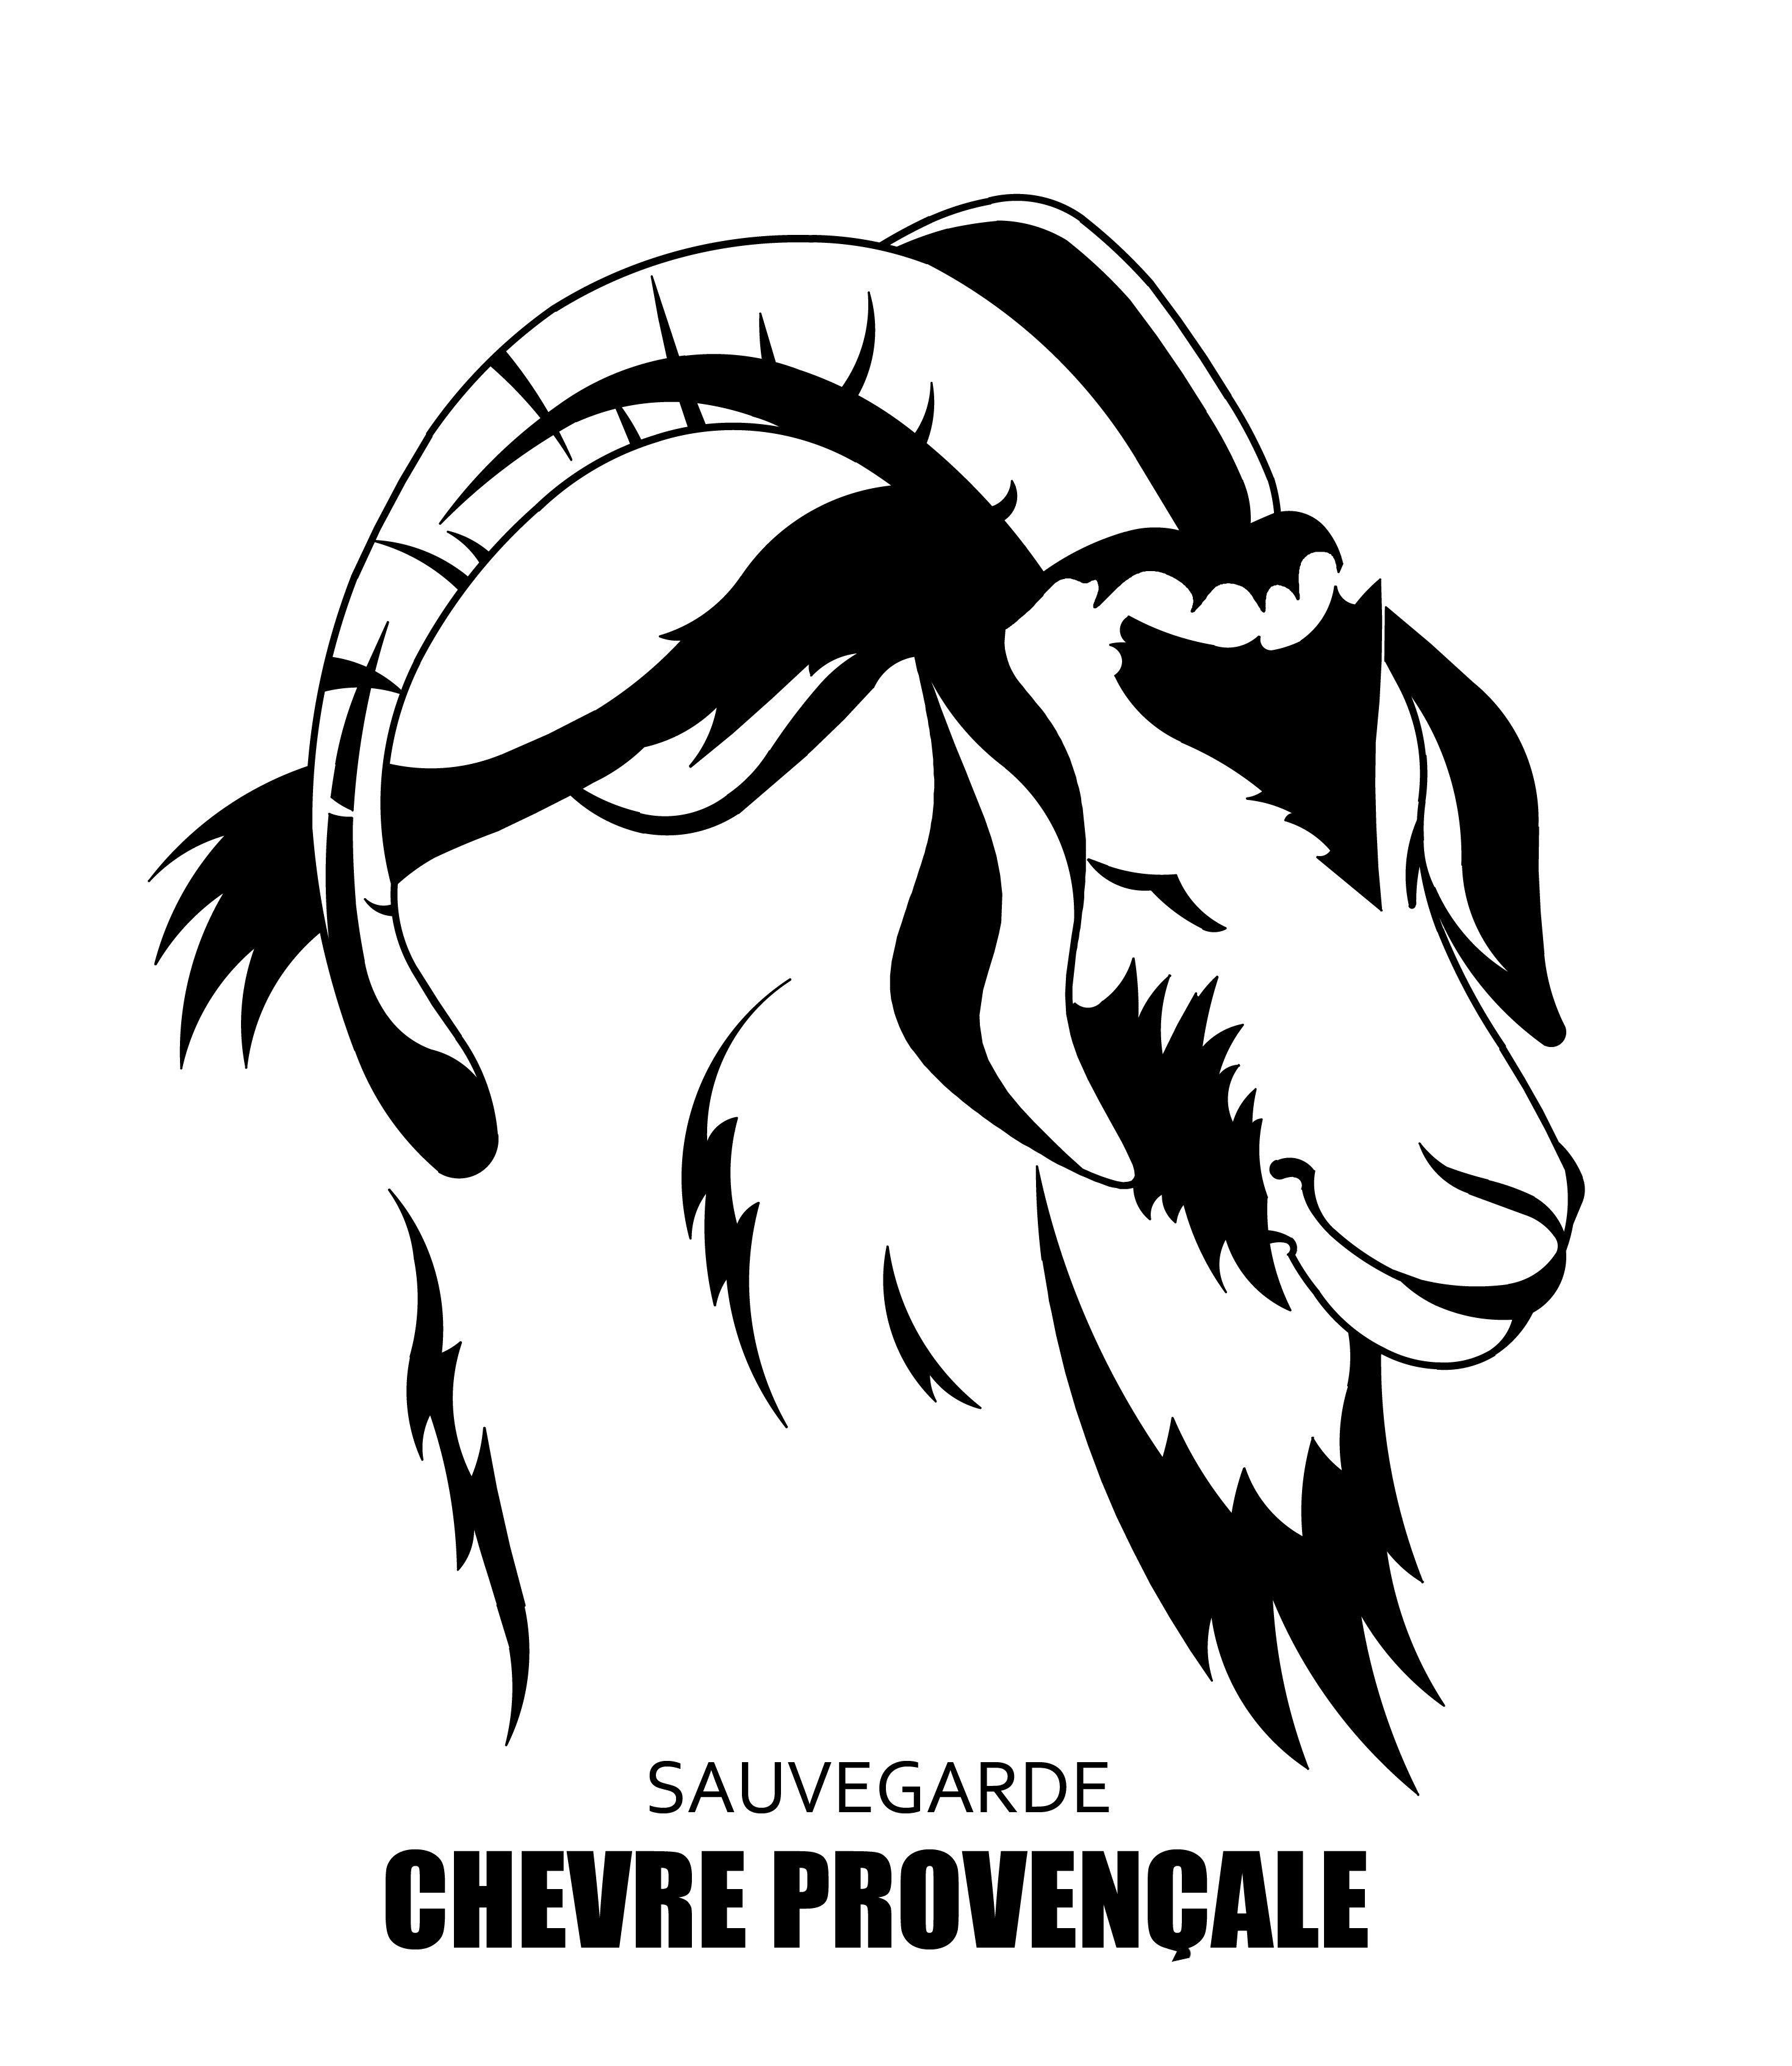 La Chèvre Provençale